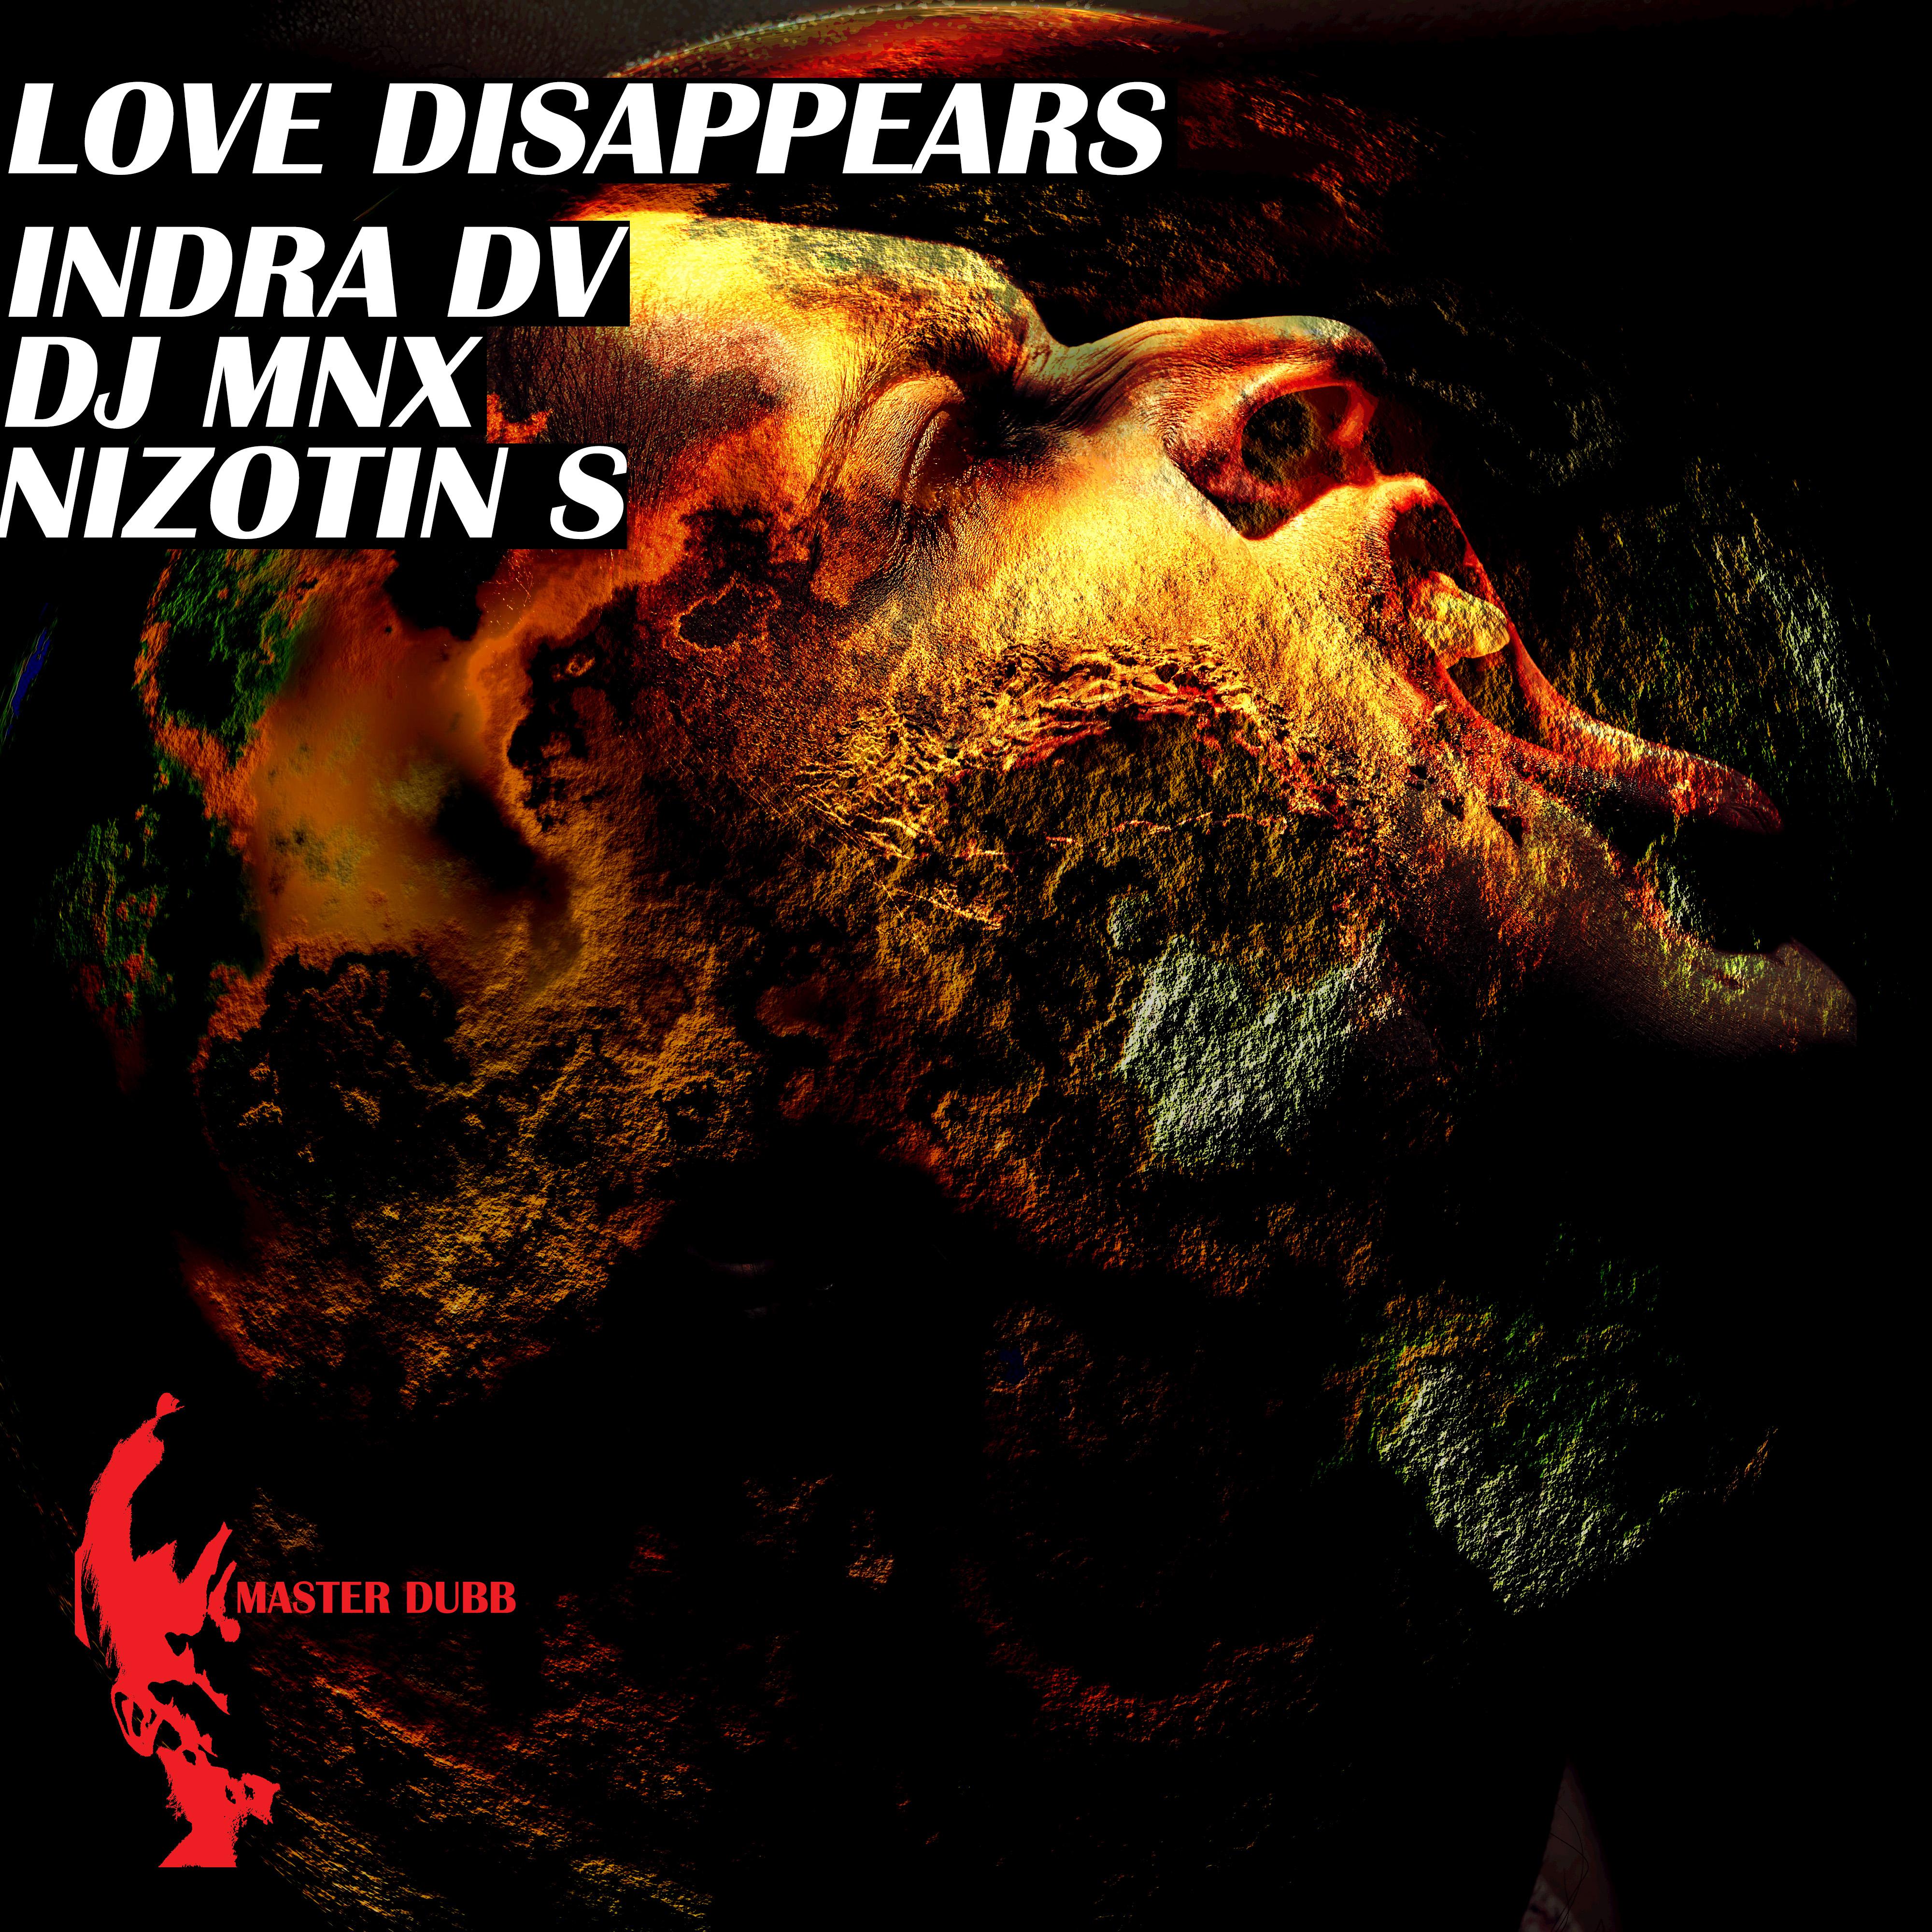 DJ MNX - Love Disappears